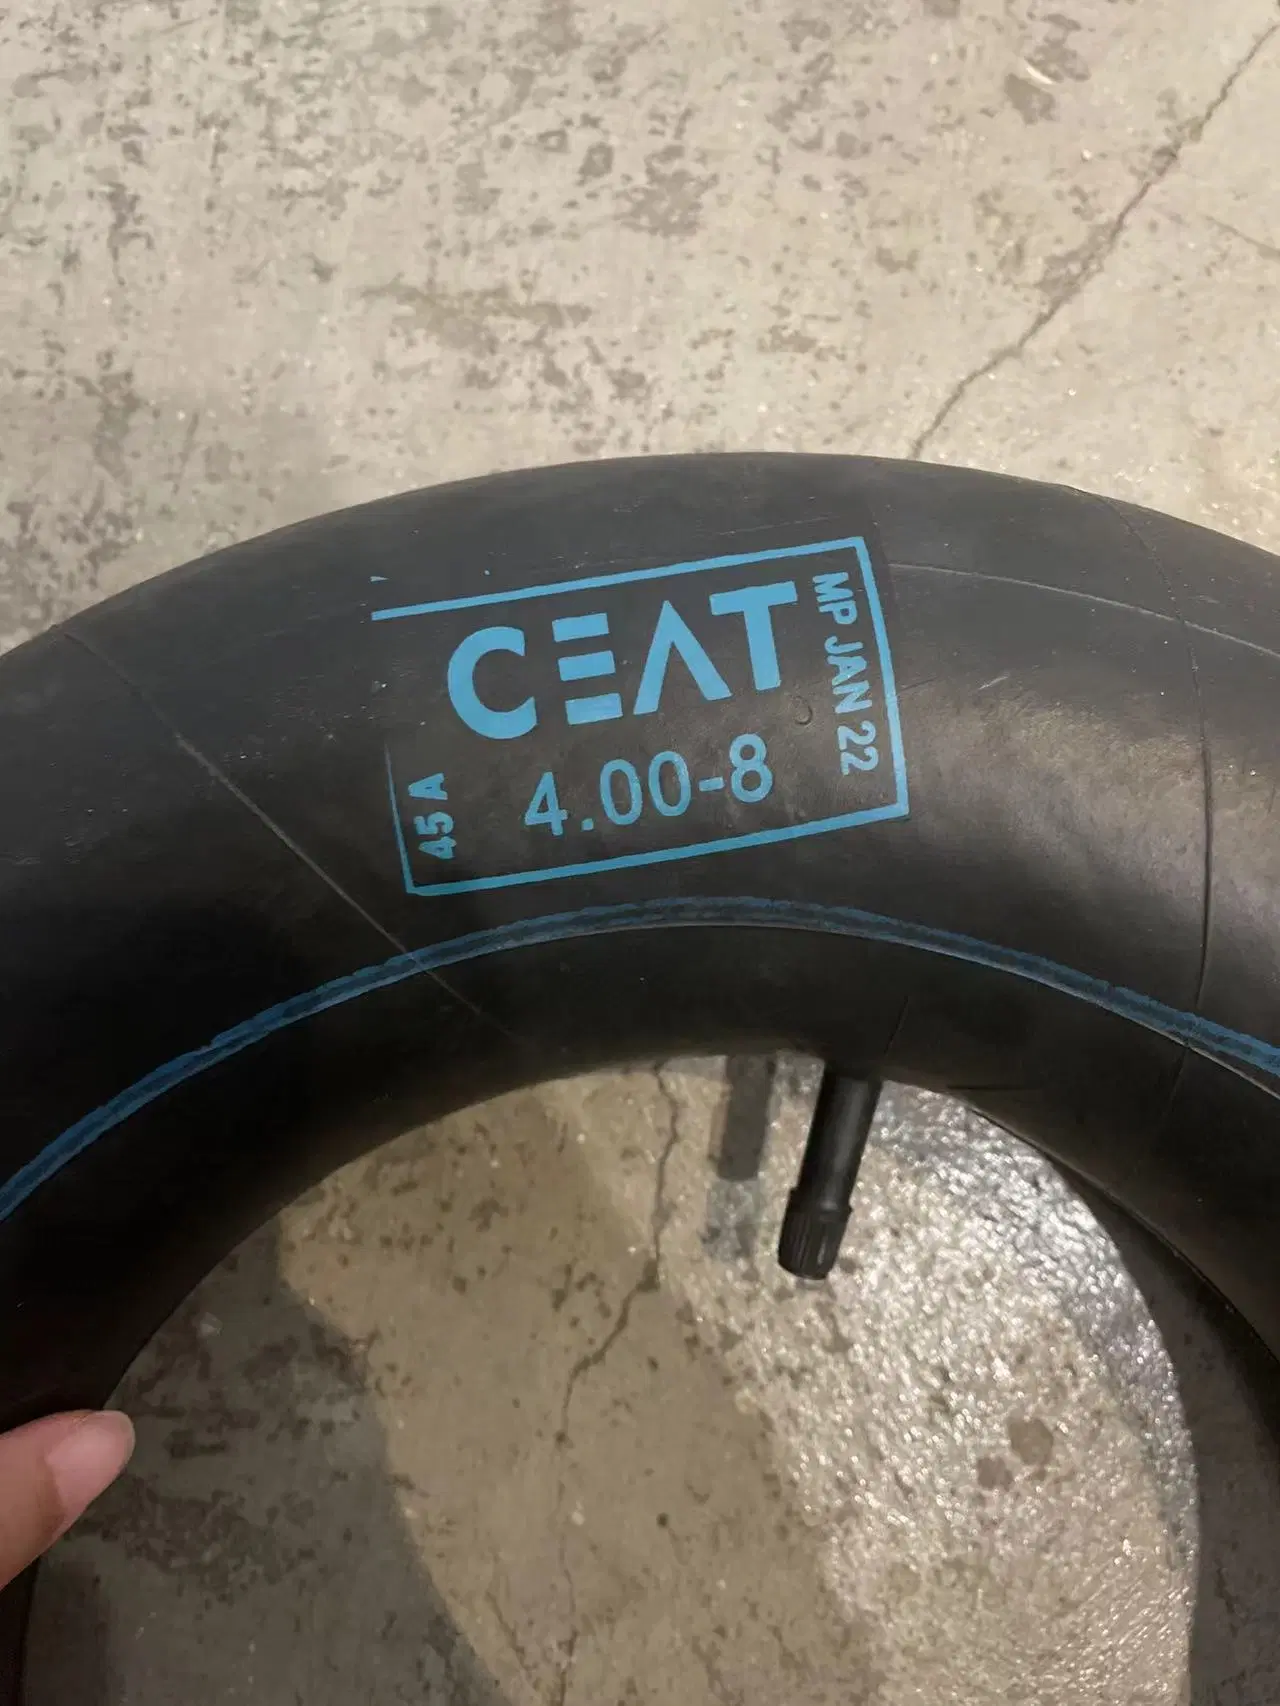 Ceat Nmax de buena calidad de la marca de neumáticos de motos 2.50-17 Exc haga clic en el tubo interior de los Neumáticos Los neumáticos de moto